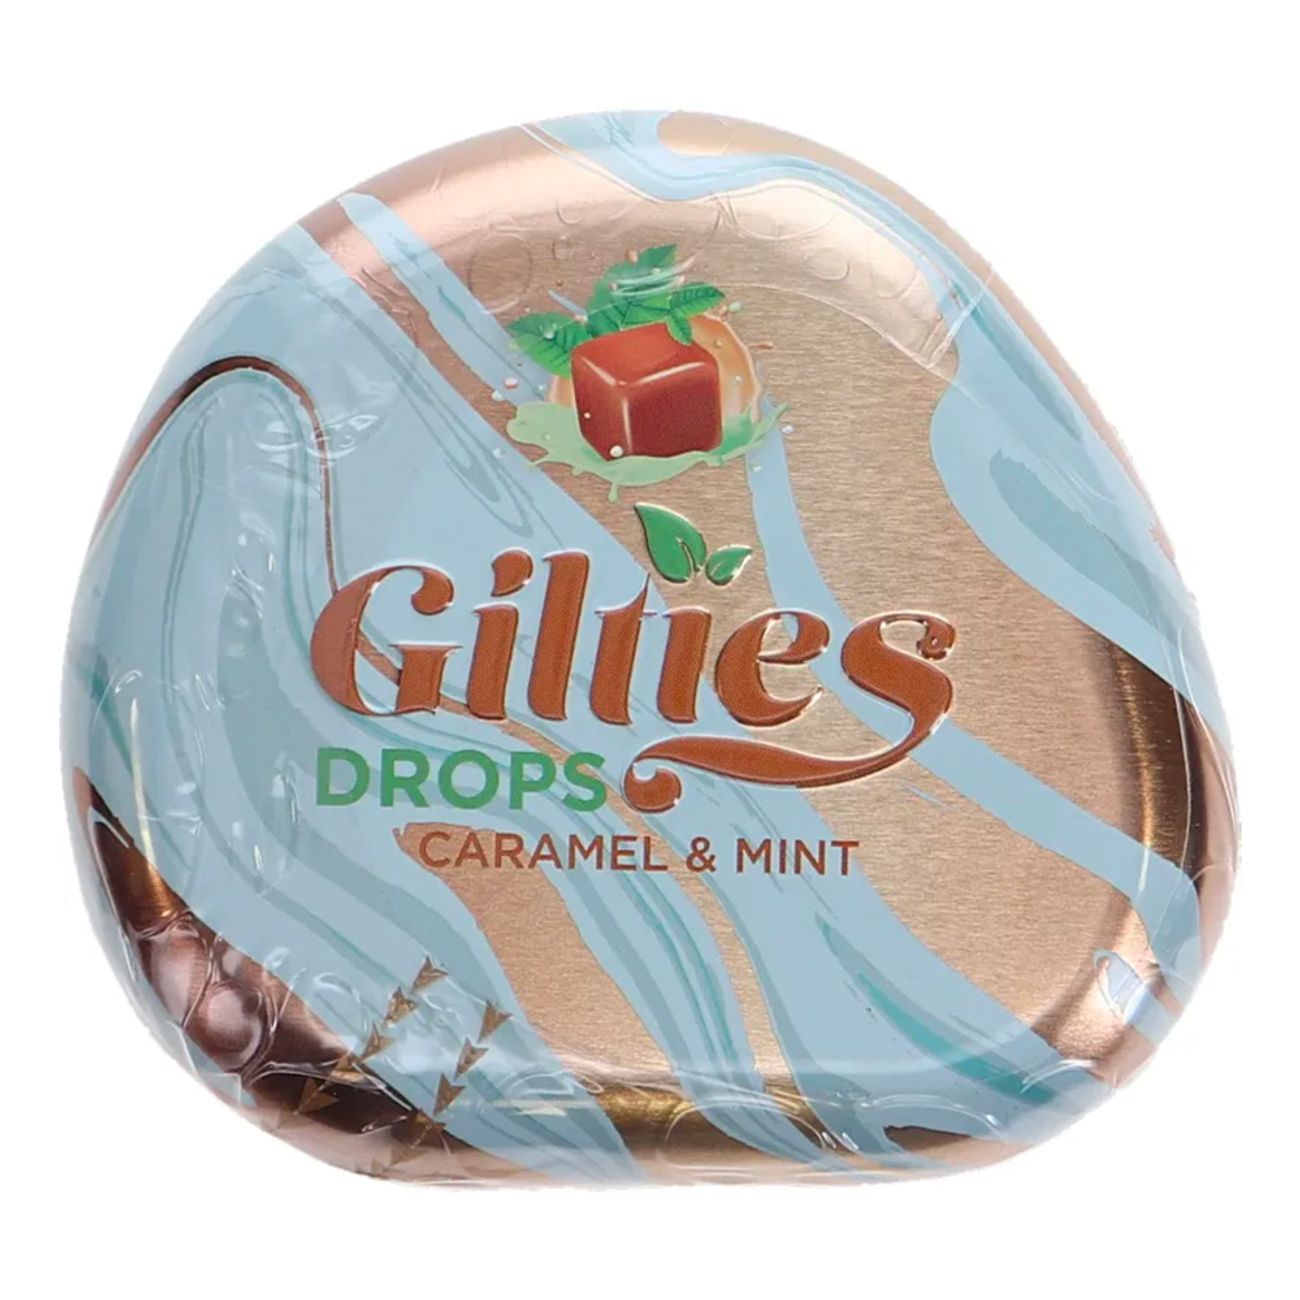 gilties-drops-caramel-mint-86563-1